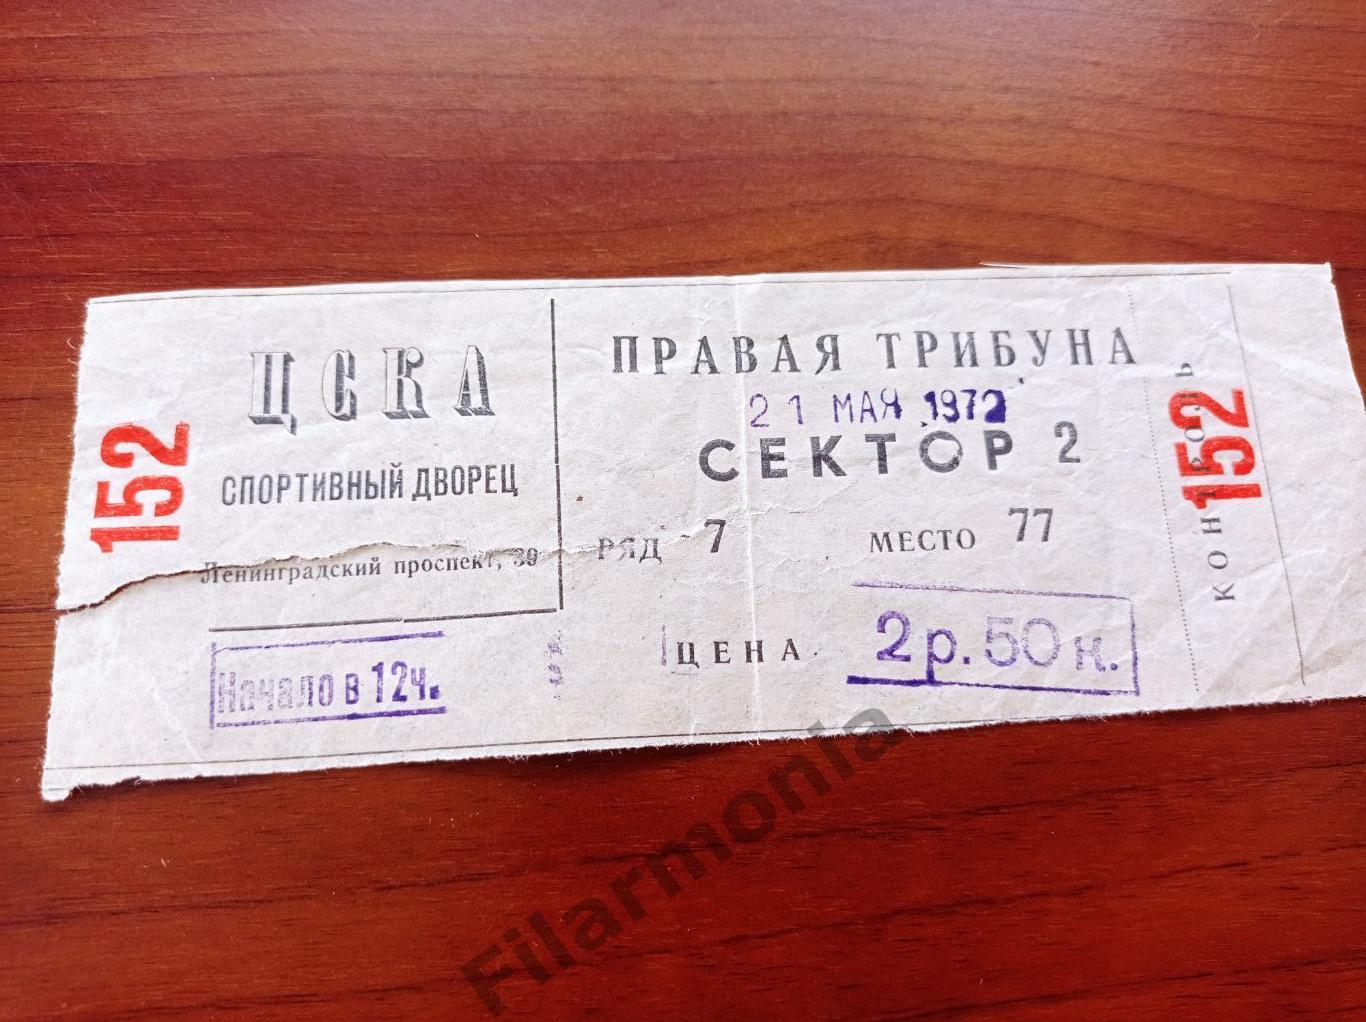 1972 Москва дворец спорта ЦСКА 21.05